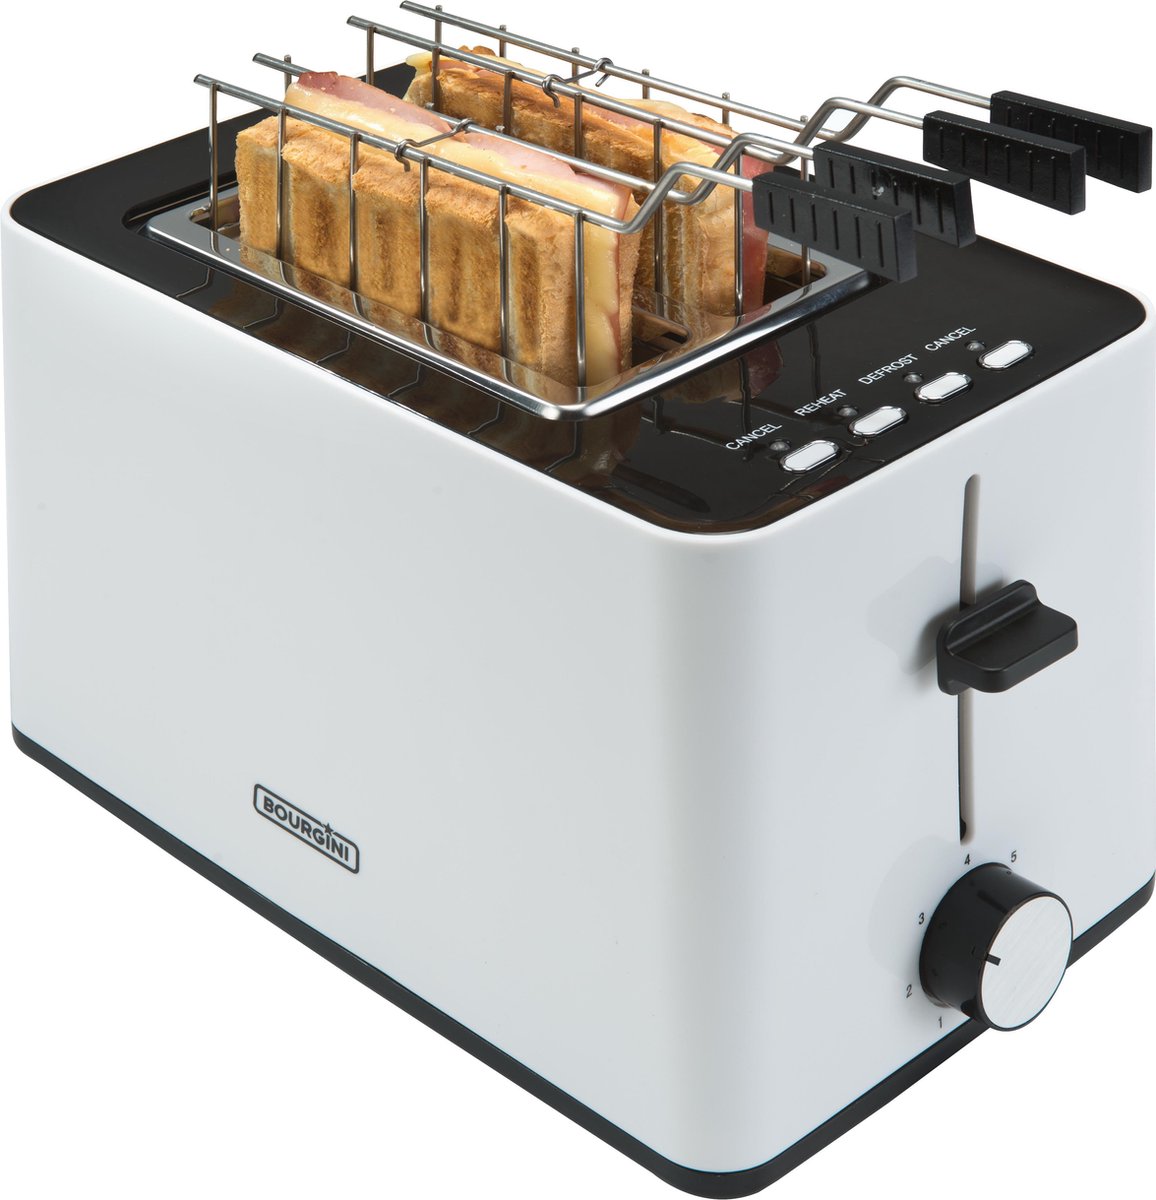 Bourgini Tosti Toaster - Broodrooster met Tostiklemmen - Wit - Extra brede sleuf geschikt voor 2 tosti's - Instelbare bruiningsstand en ontdooifunctie - Bourgini